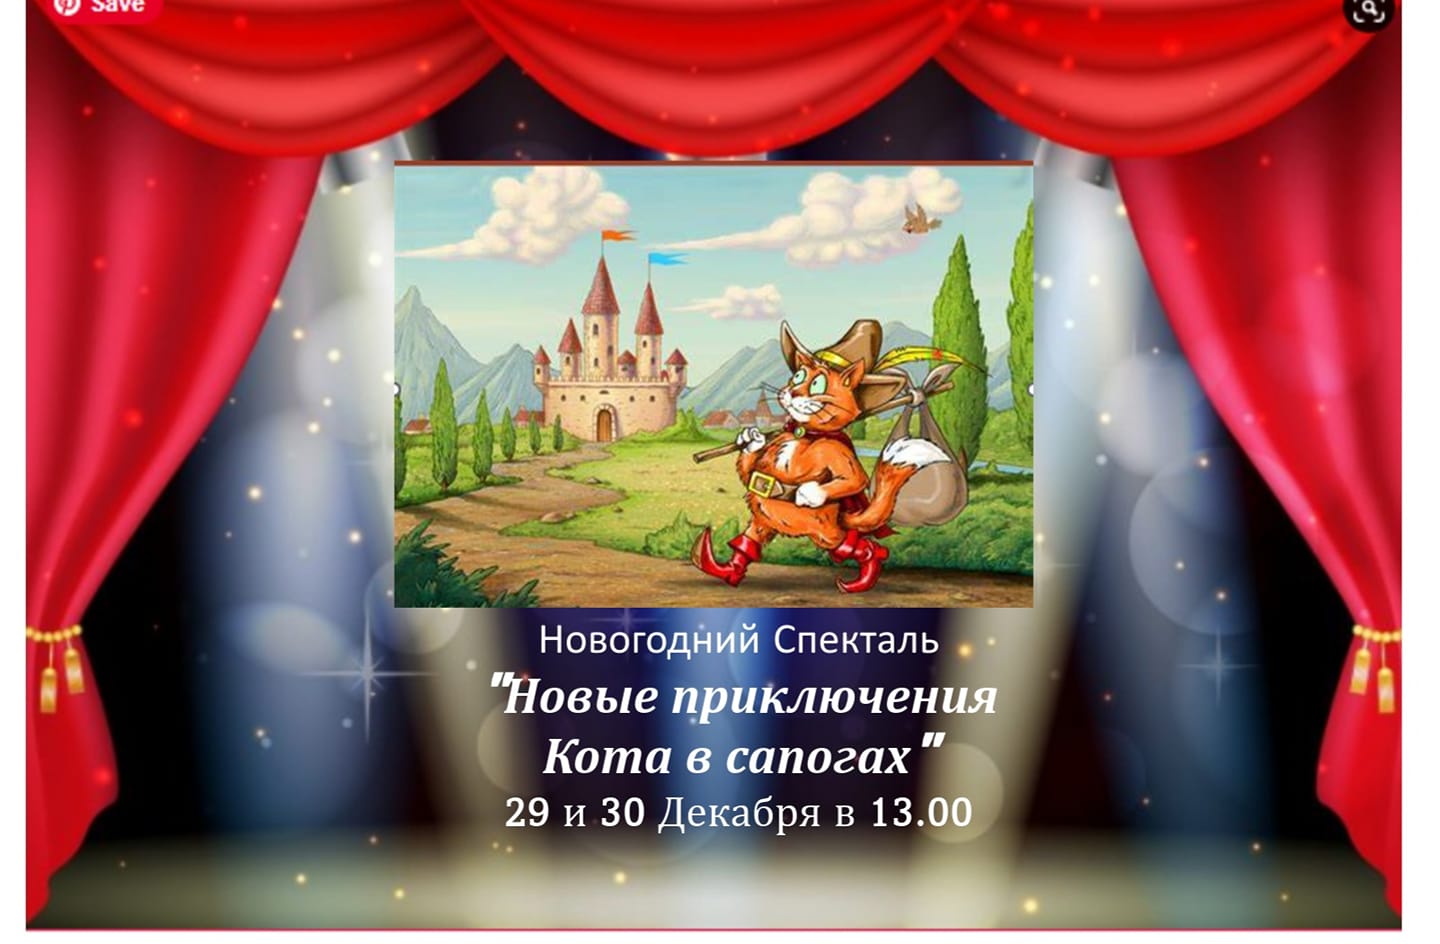 Новогодний спектакль "Новые приключения Кота в сапогах"